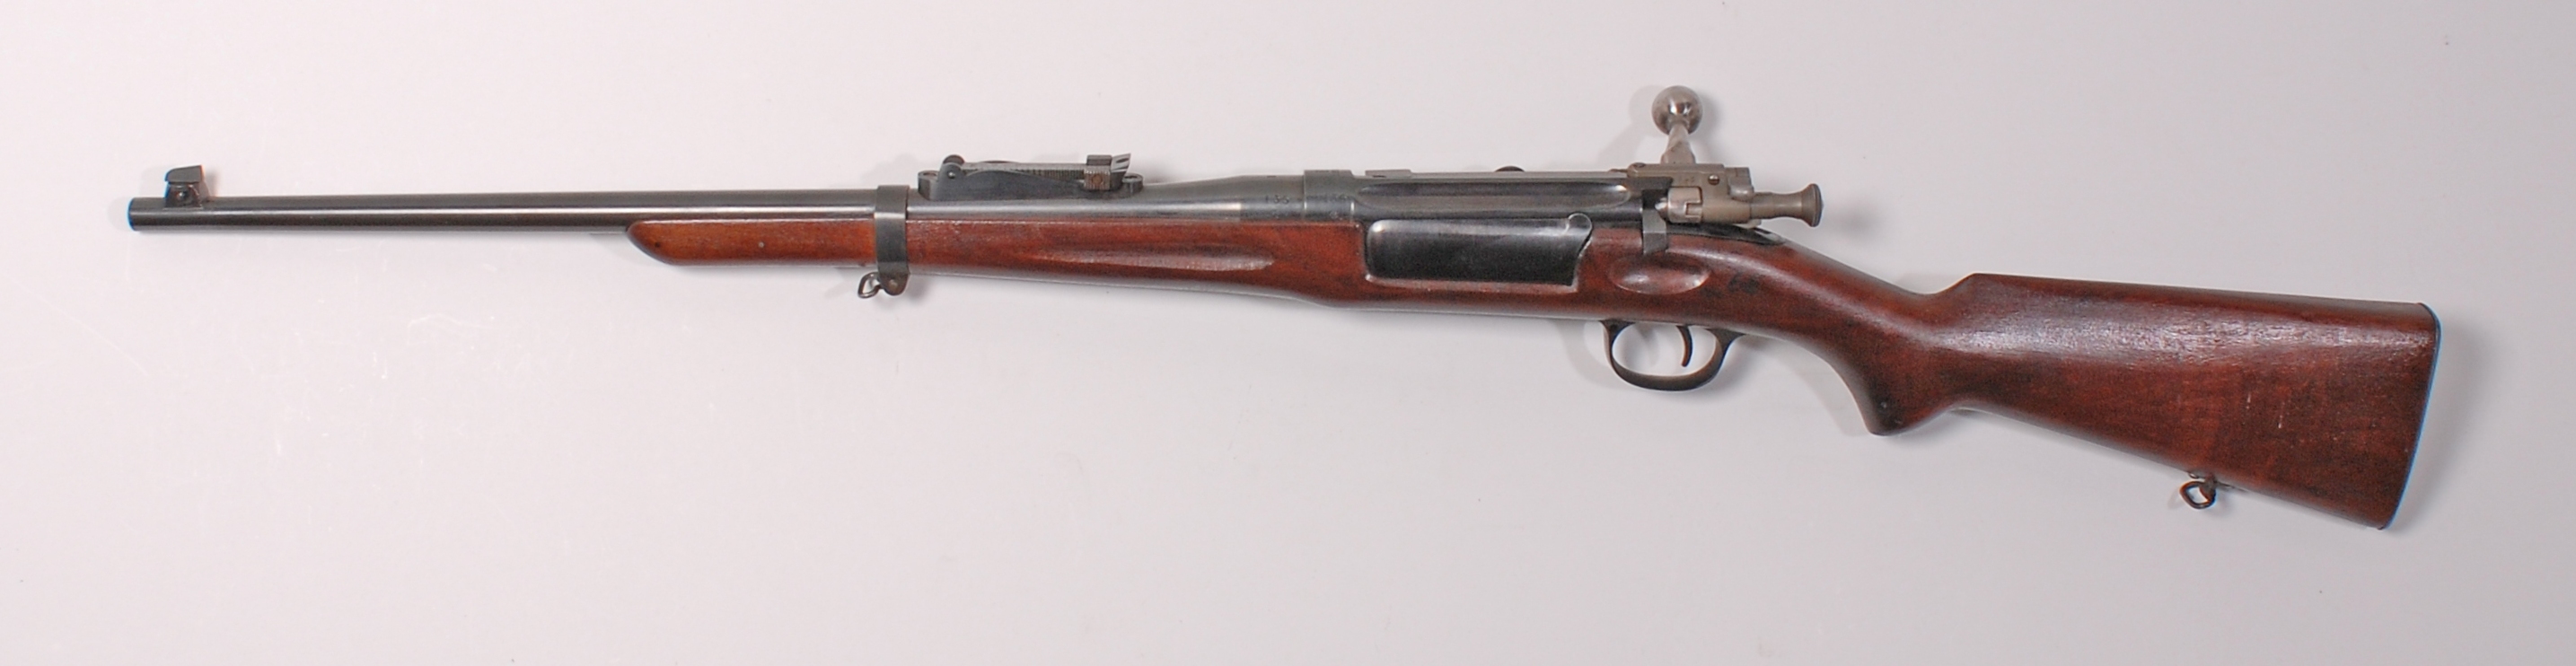 ./guns/rifle/bilder/Rifle-Kongsberg-Krag-M1906-135-2.jpg